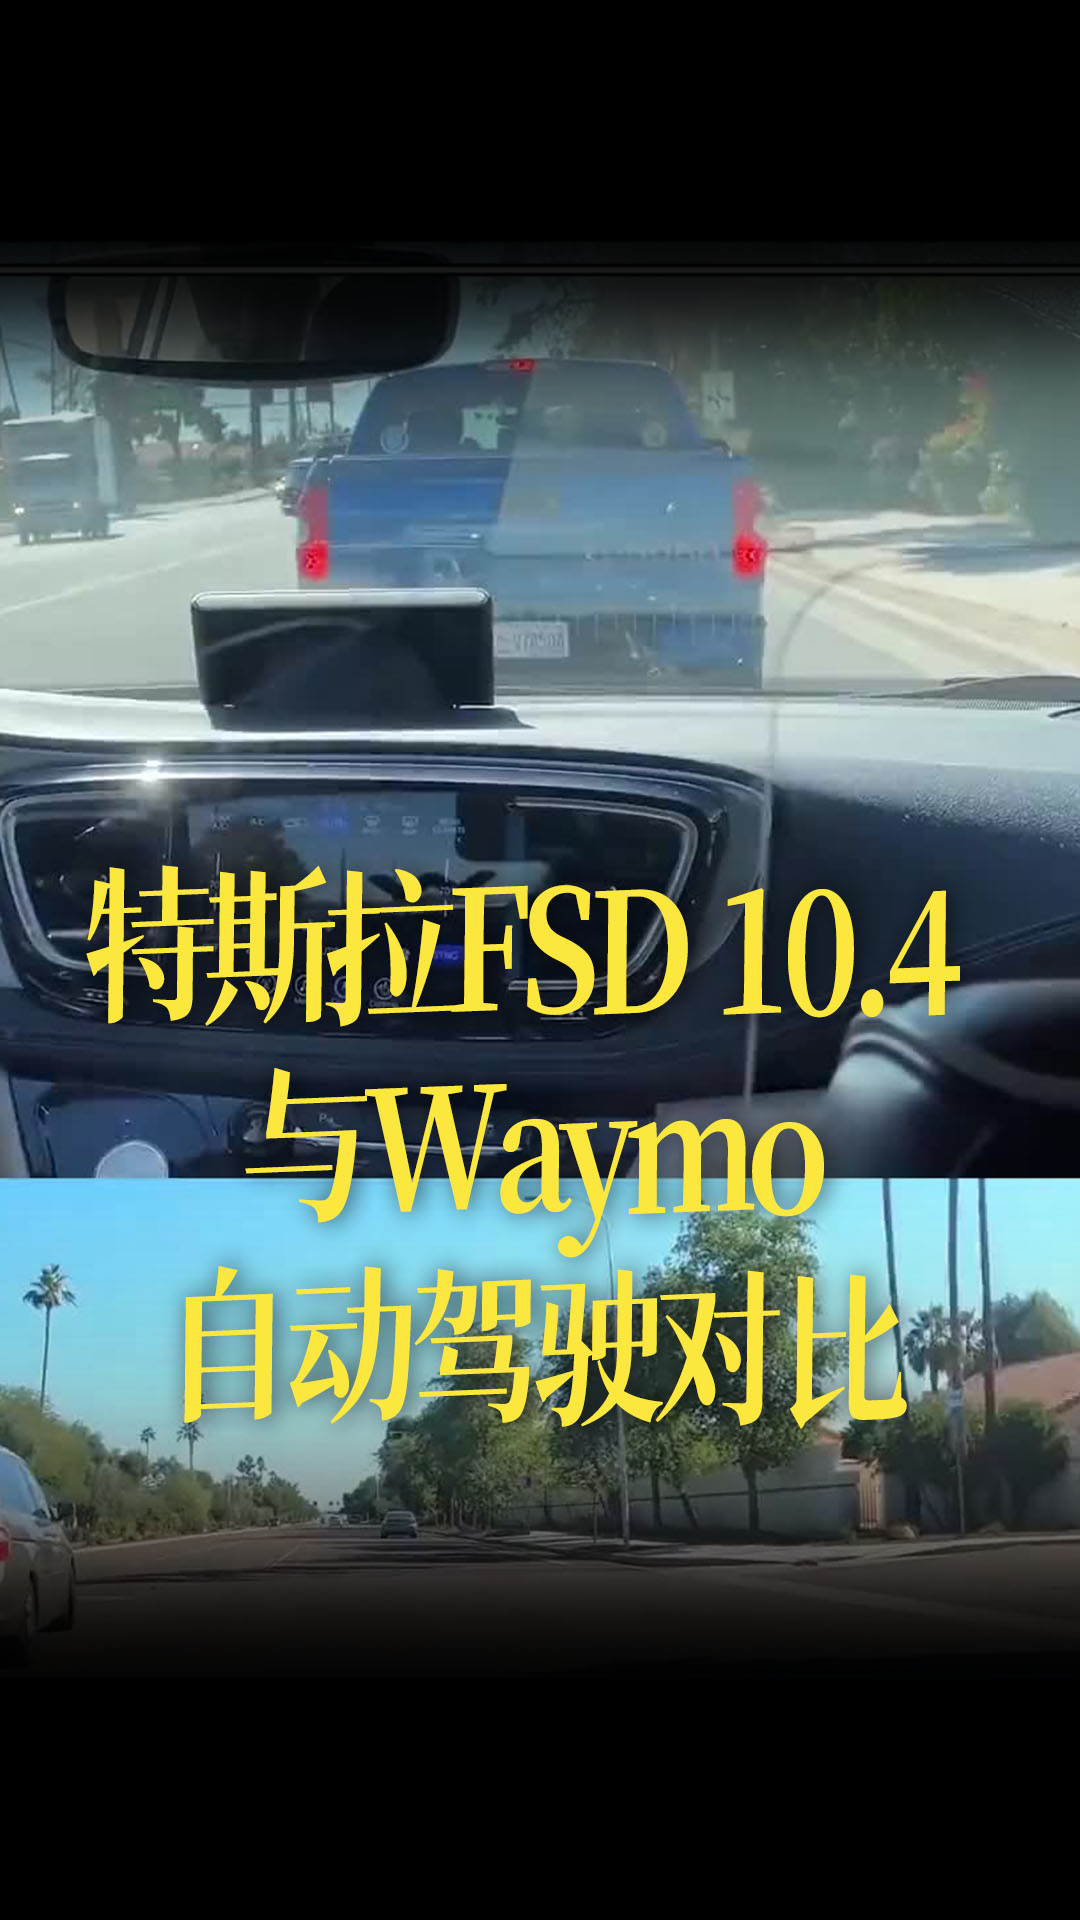 【中文】特斯拉FSD 10.4 与Waymo自动驾驶对比，谁能先到终点